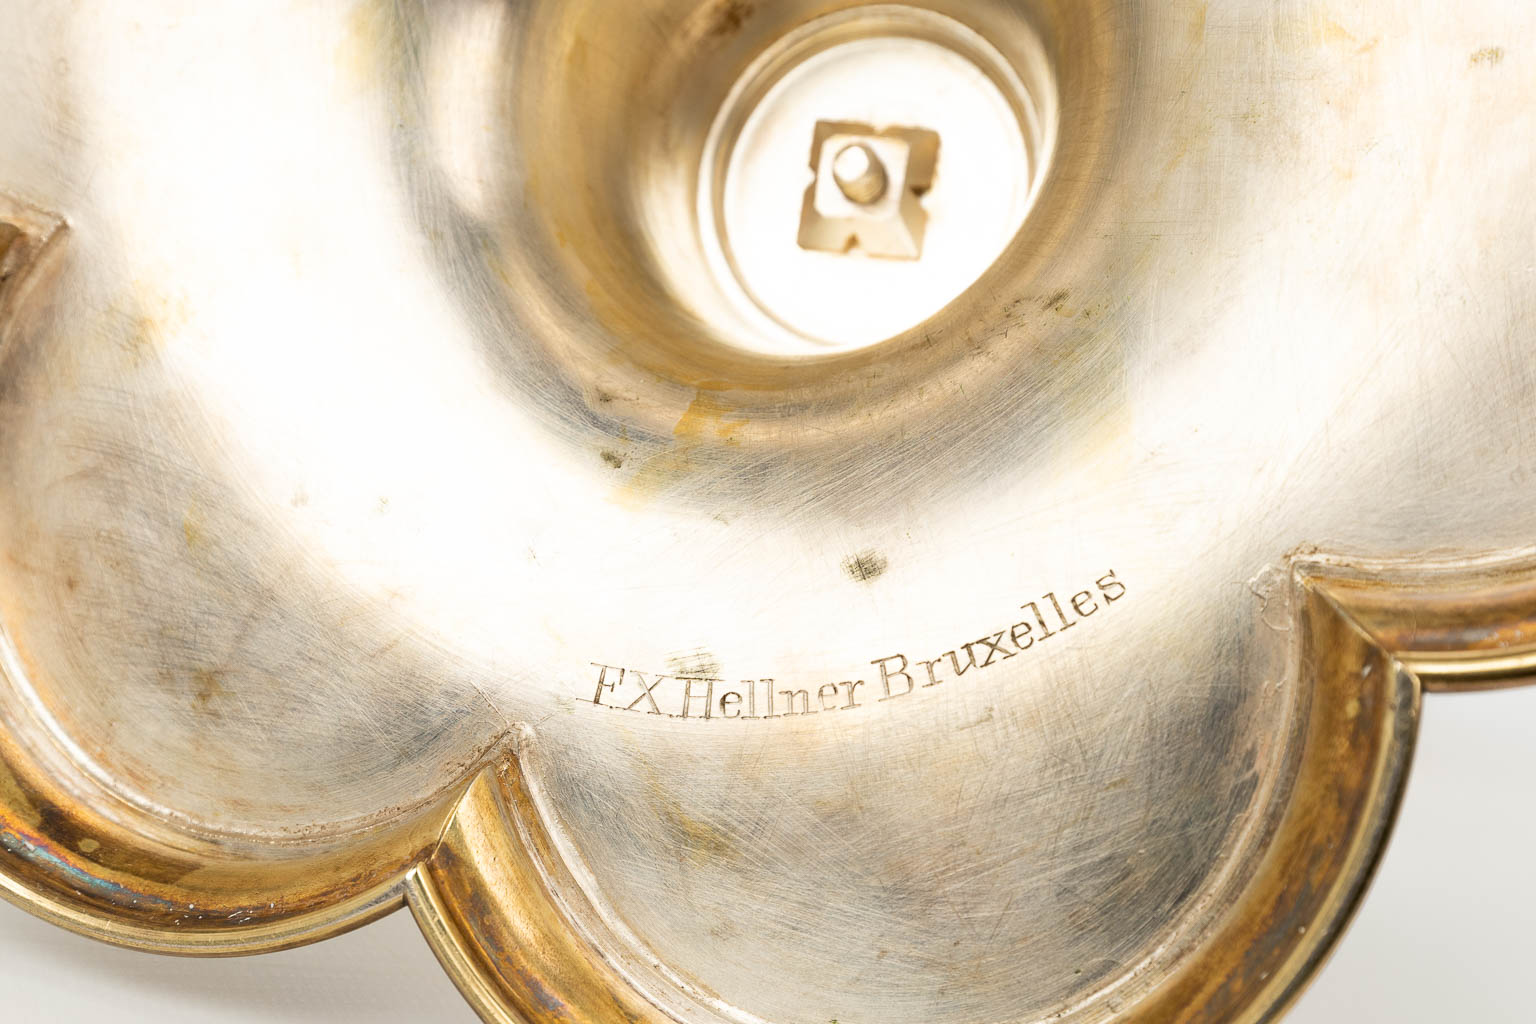 Franz Xaver HELLNER (1819-1901) Een uitzonderlijke neogotische torenmonstrans gemaakt uit verguld zilver (H:62cm)